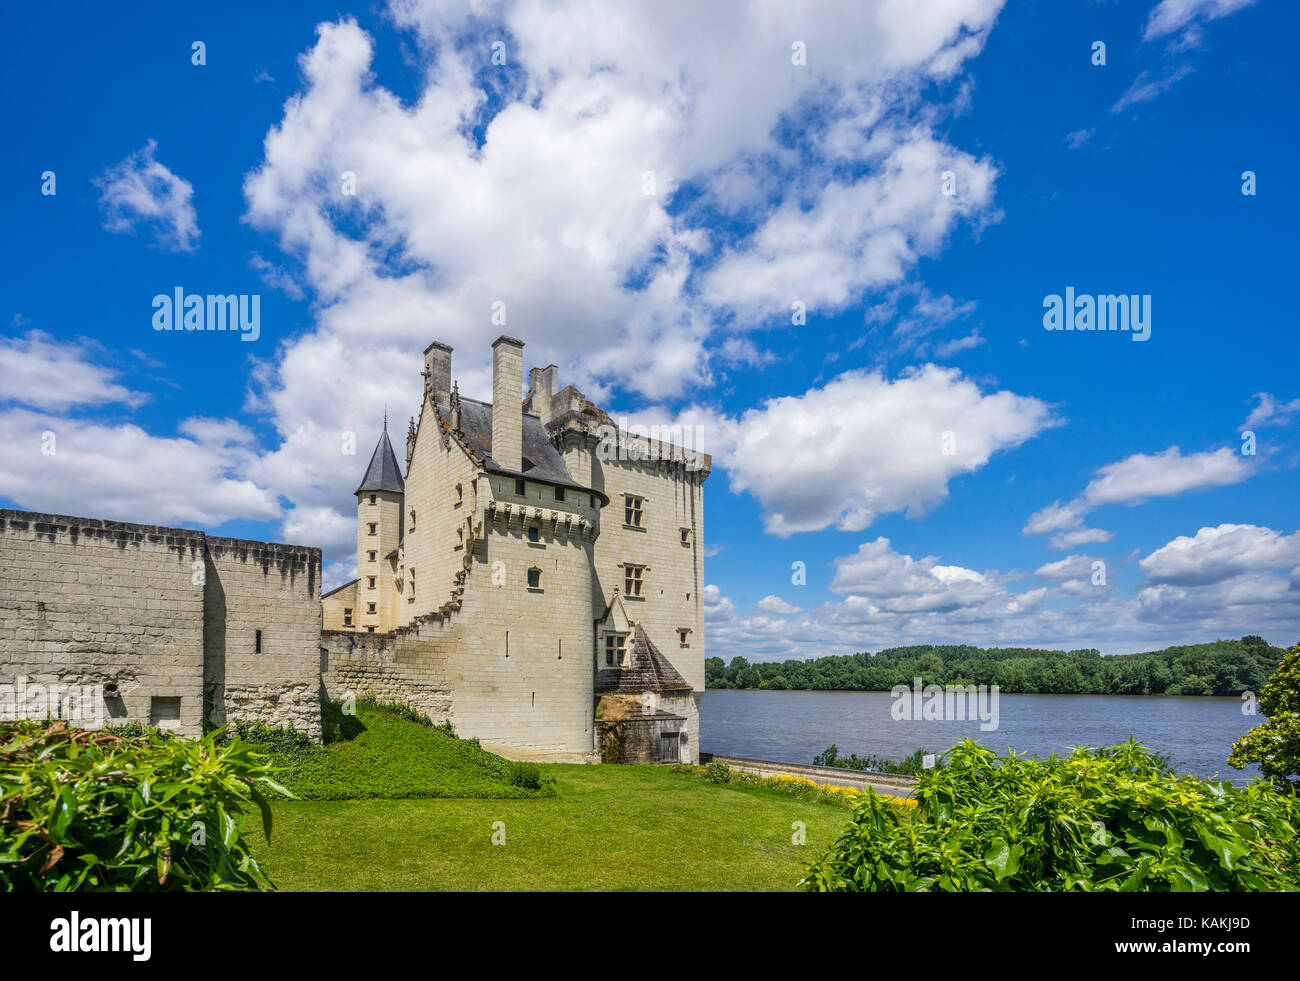 France, Pays de la Loire, Maine-et-Loire department, Montsoreau, view of the Renaissance style castle Château de Montsoreau at the Loire river Stock Photo